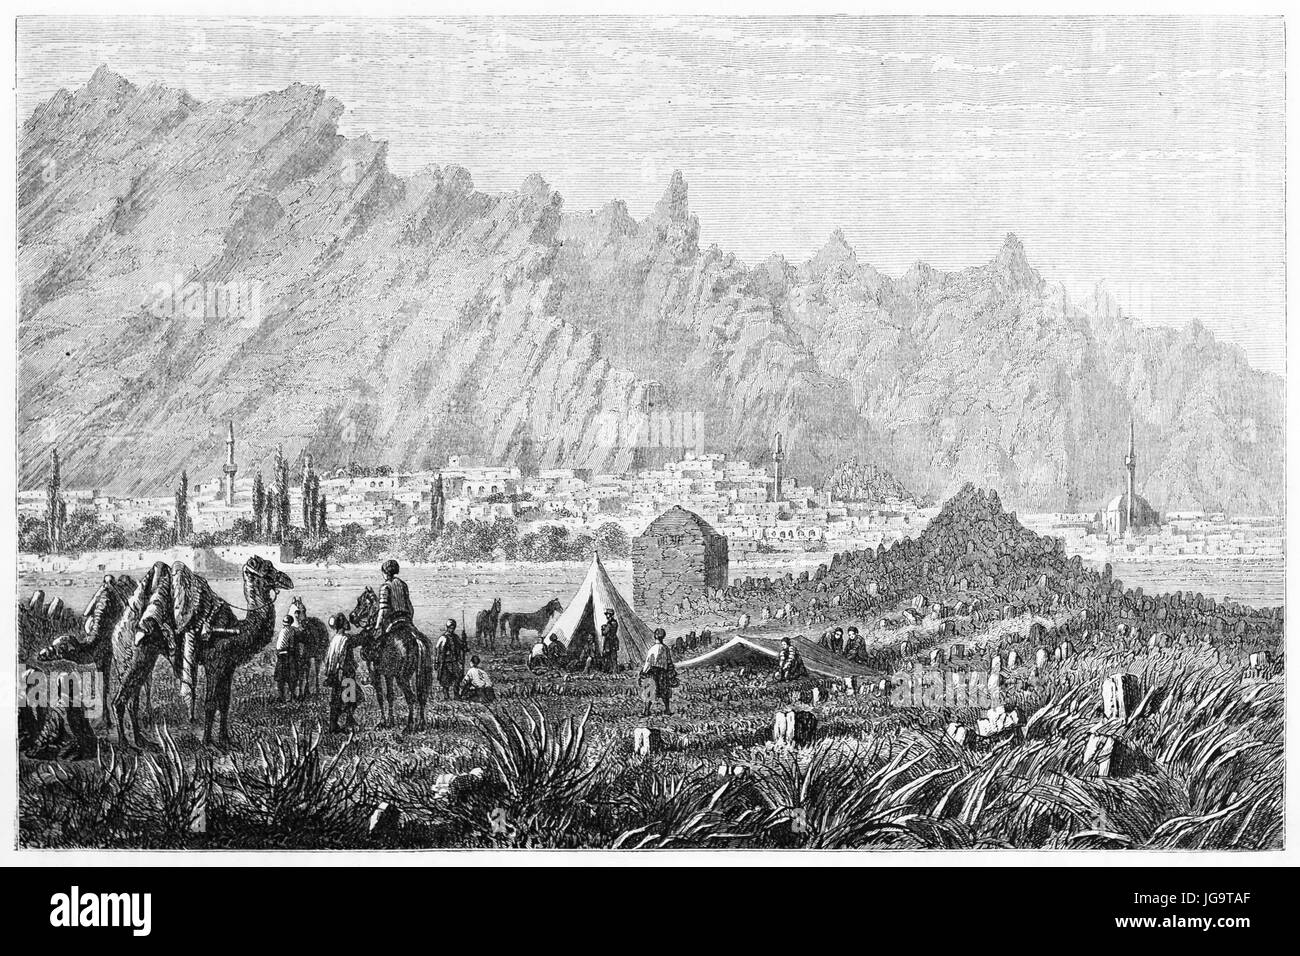 Caravane en face de la ville de Sivrihisar, centre de l'Anatolie, Turquie, sur un terrain plat à de hauts pieds de montagnes pointues. Art de Grandsire, publié le 1861 Banque D'Images